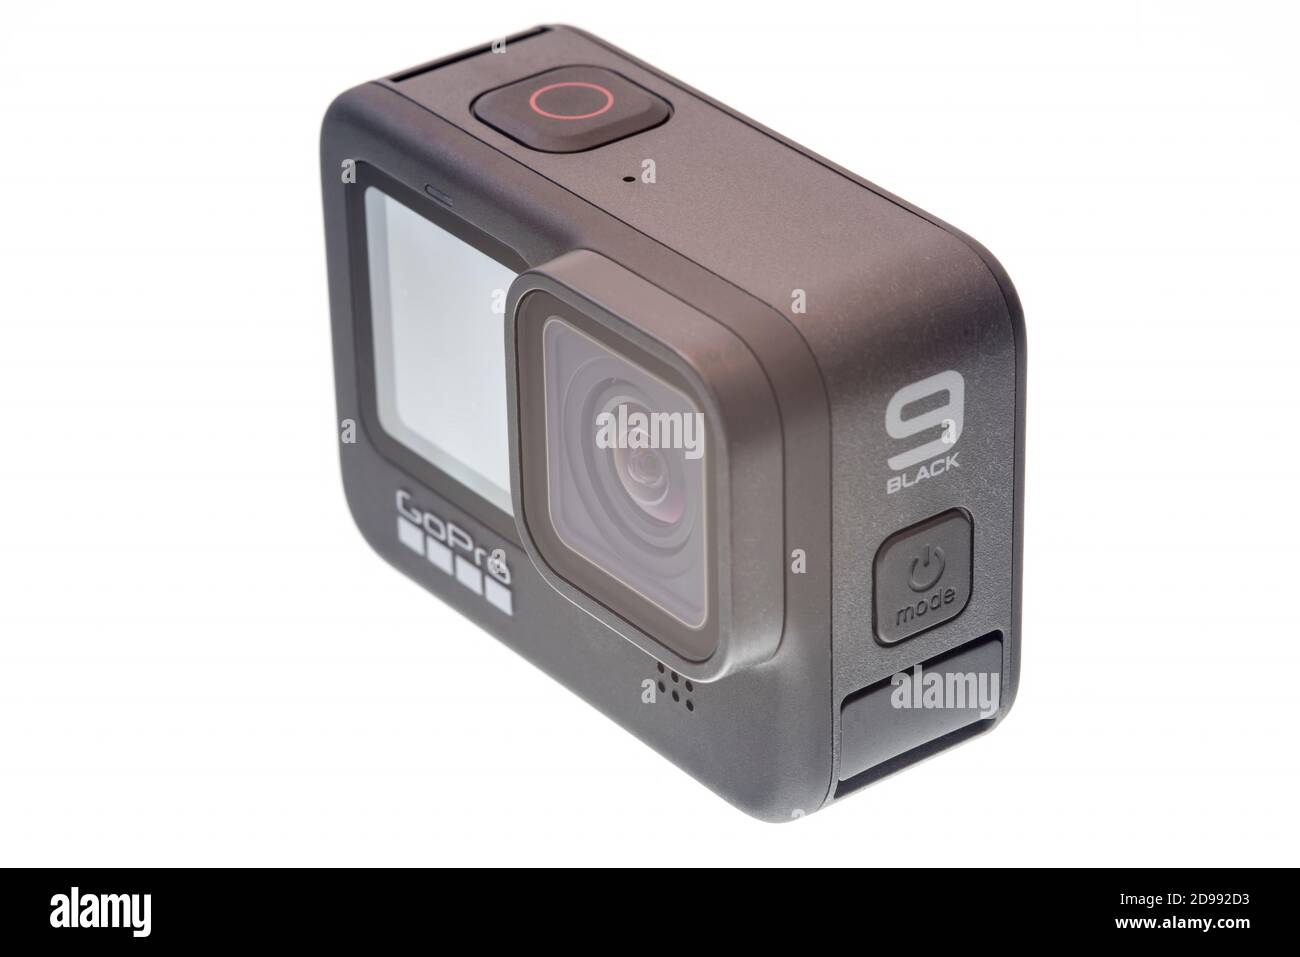 PIATRA NEAMT, ROUMANIE - 18 SEPTEMBRE 2020 : caméra compacte pour l'action, modèle GoPro 9 Black Banque D'Images